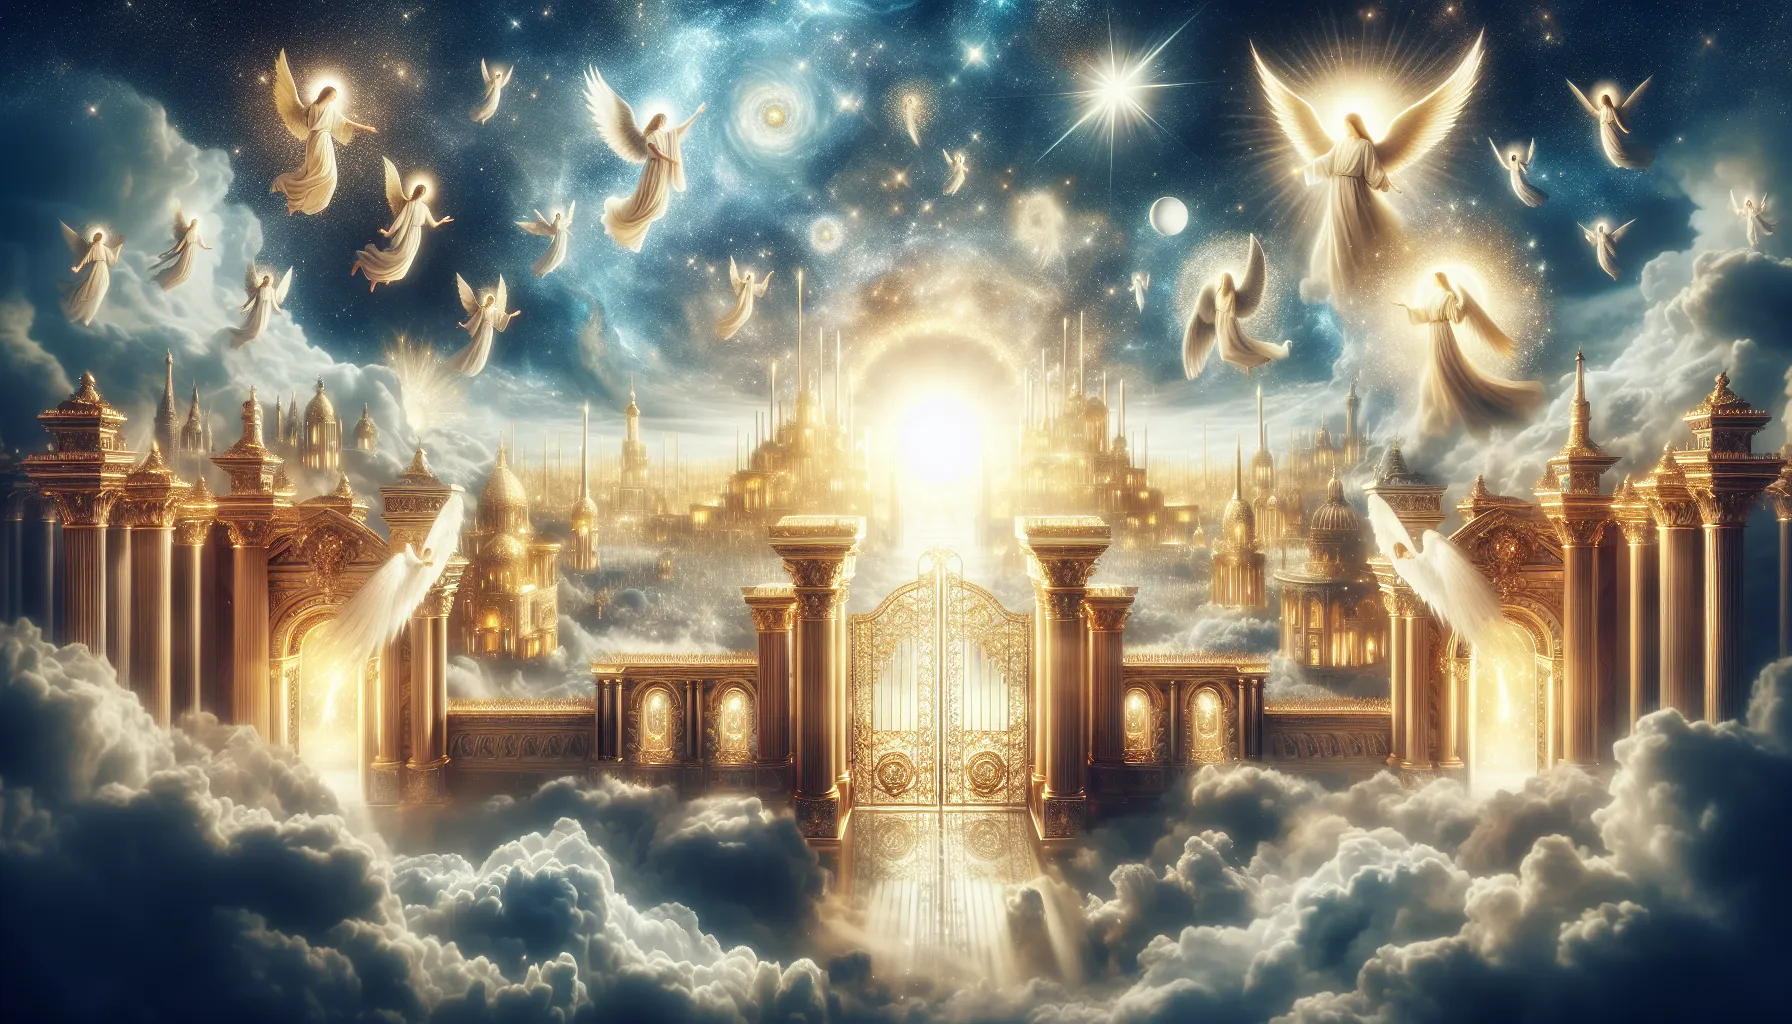 Representación artística de la Jerusalén celestial descrita en el libro del Apocalipsis y la Biblia.